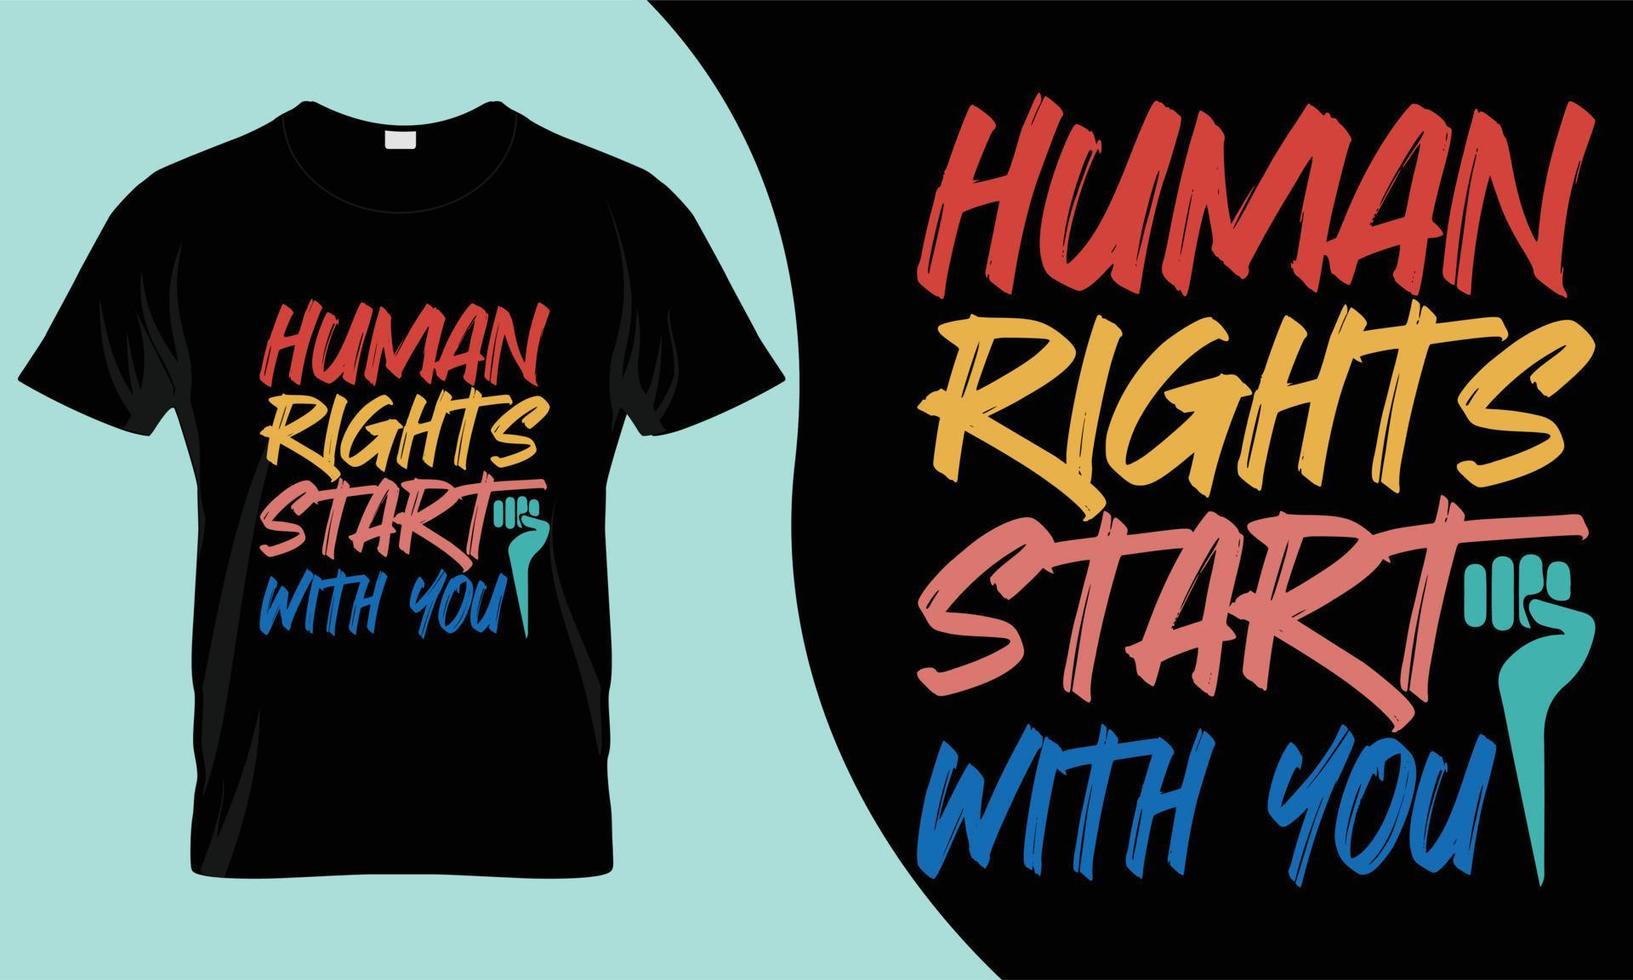 T-Shirt-Design zum Tag der Menschenrechte. Dies wäre das beste Angebot für den bevorstehenden Welttag der Menschenrechte. vektor